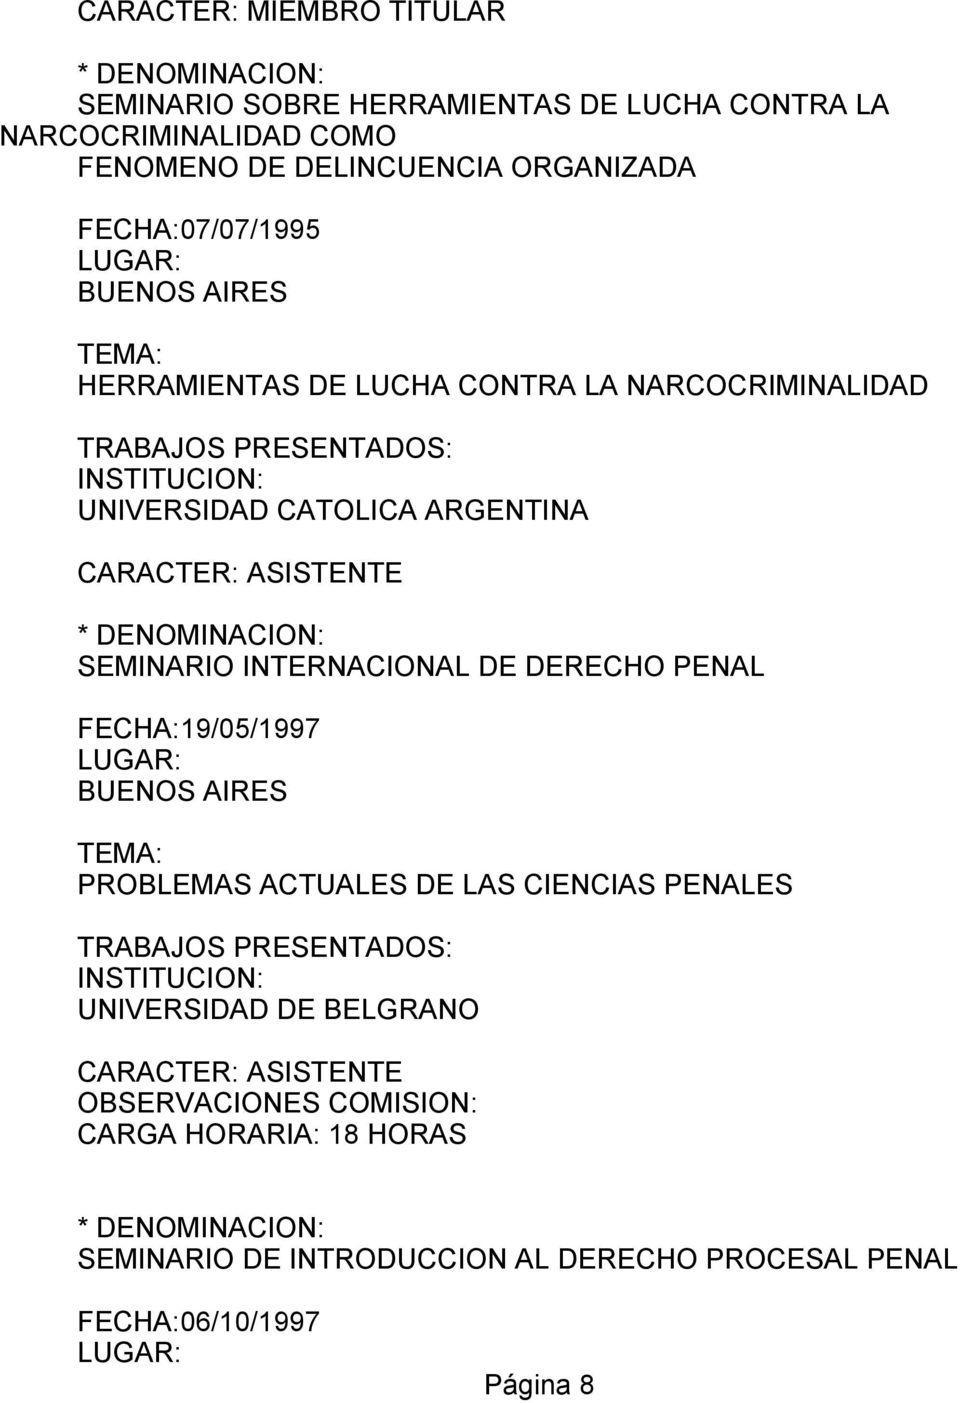 ASISTENTE SEMINARIO INTERNACIONAL DE DERECHO PENAL FECHA:19/05/1997 PROBLEMAS ACTUALES DE LAS CIENCIAS PENALES UNIVERSIDAD